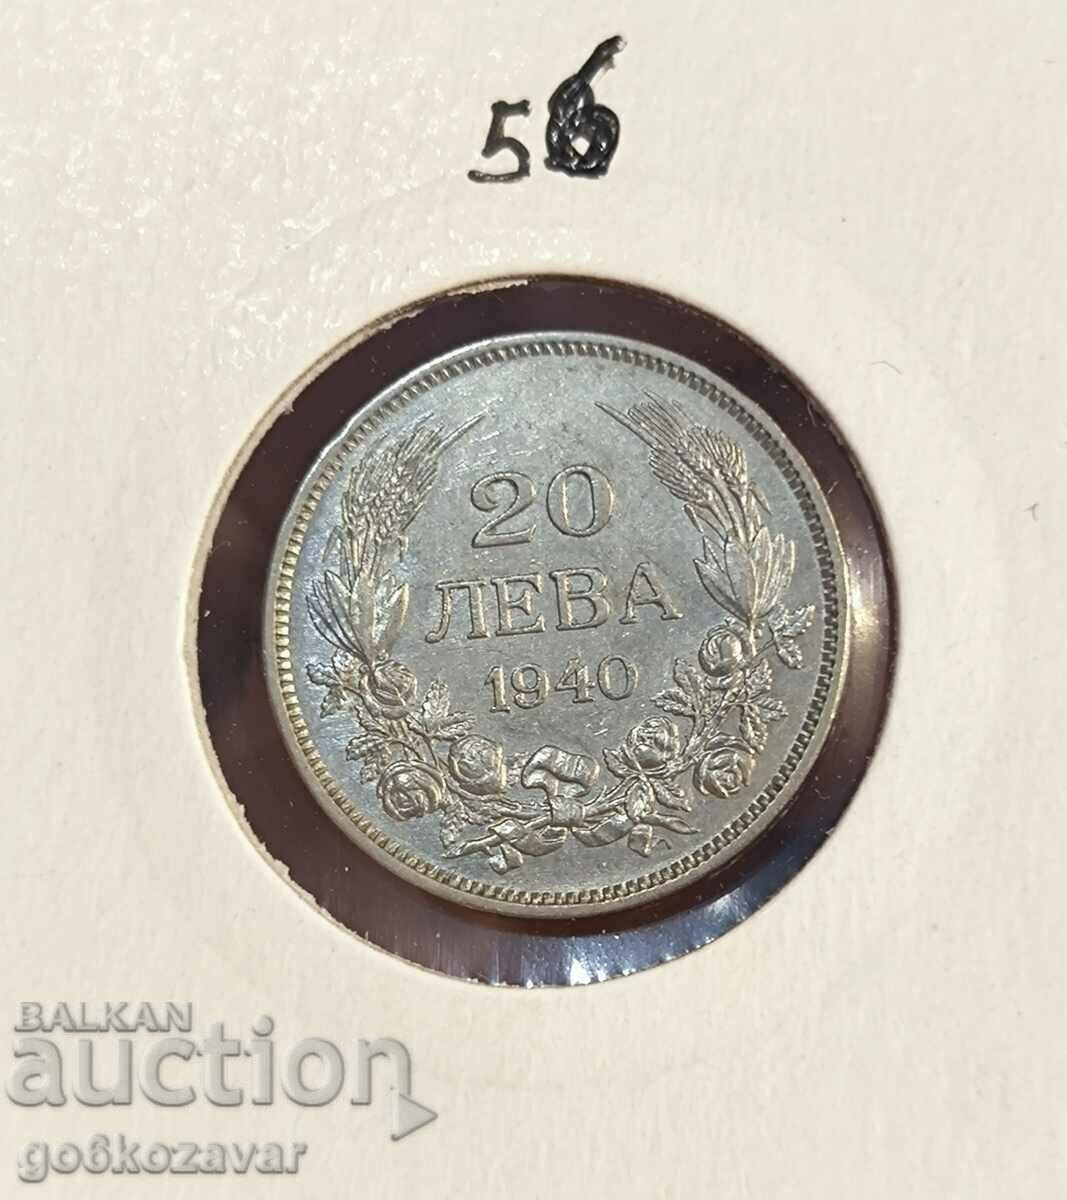 Bulgaria 20 BGN 1940 Top coin!